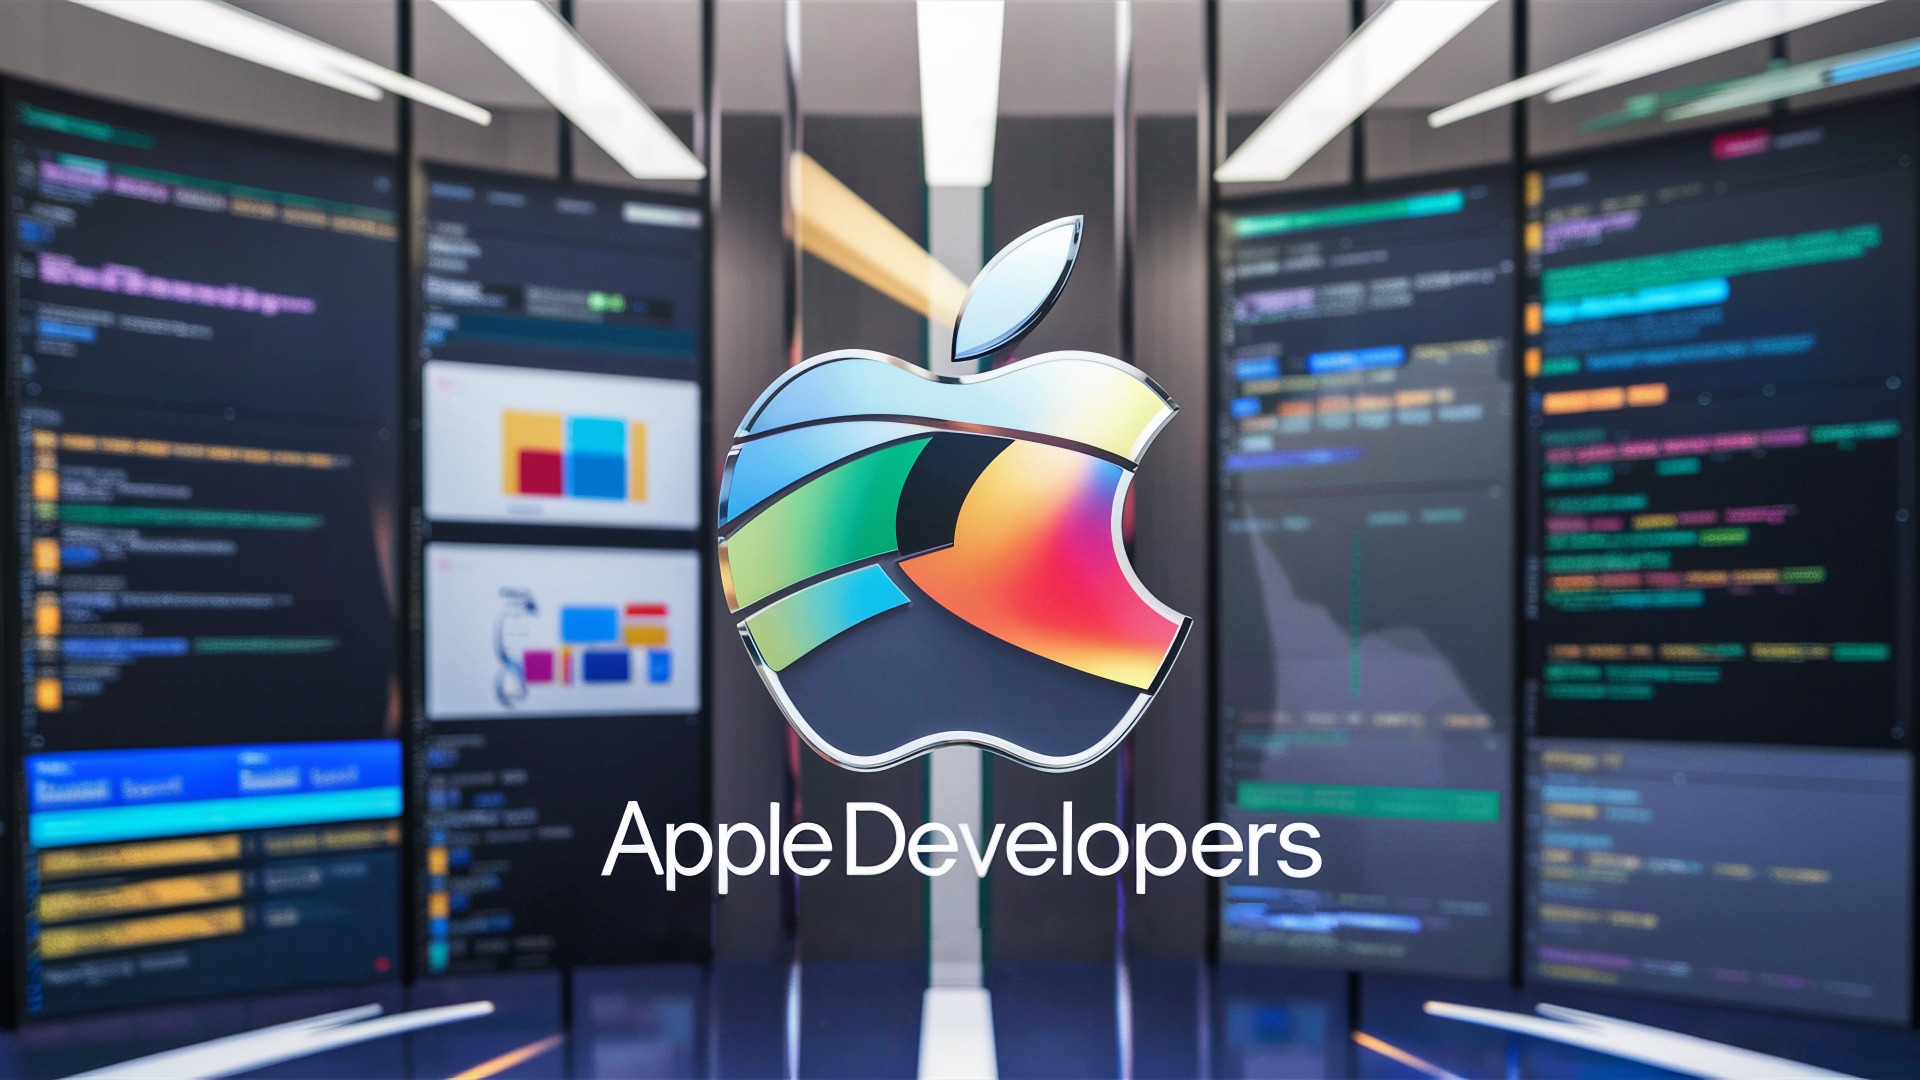 Apple Developer: новый YouTube-канал компании с уроками для разработчиков